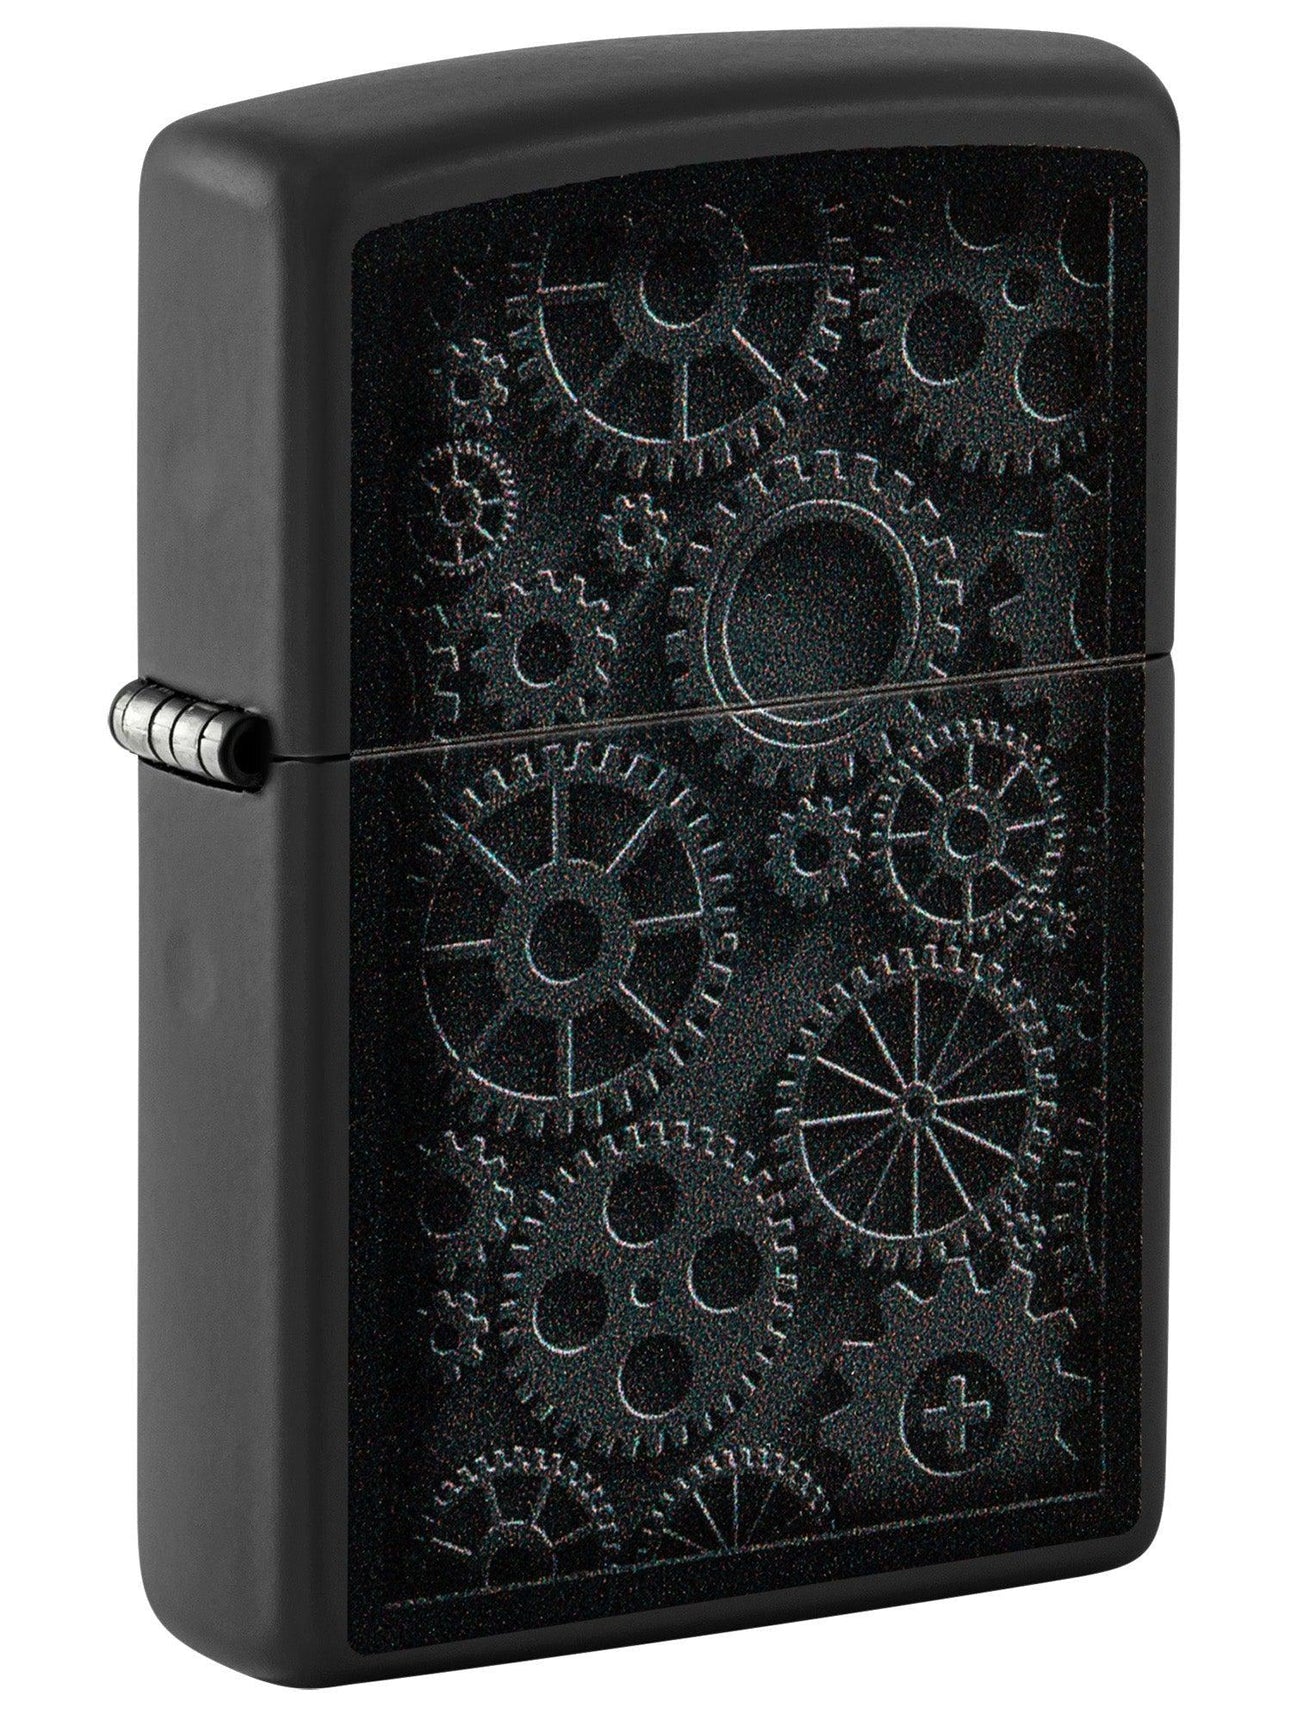 Zippo Lighter: Steampunk Gears - Black Matte 48999